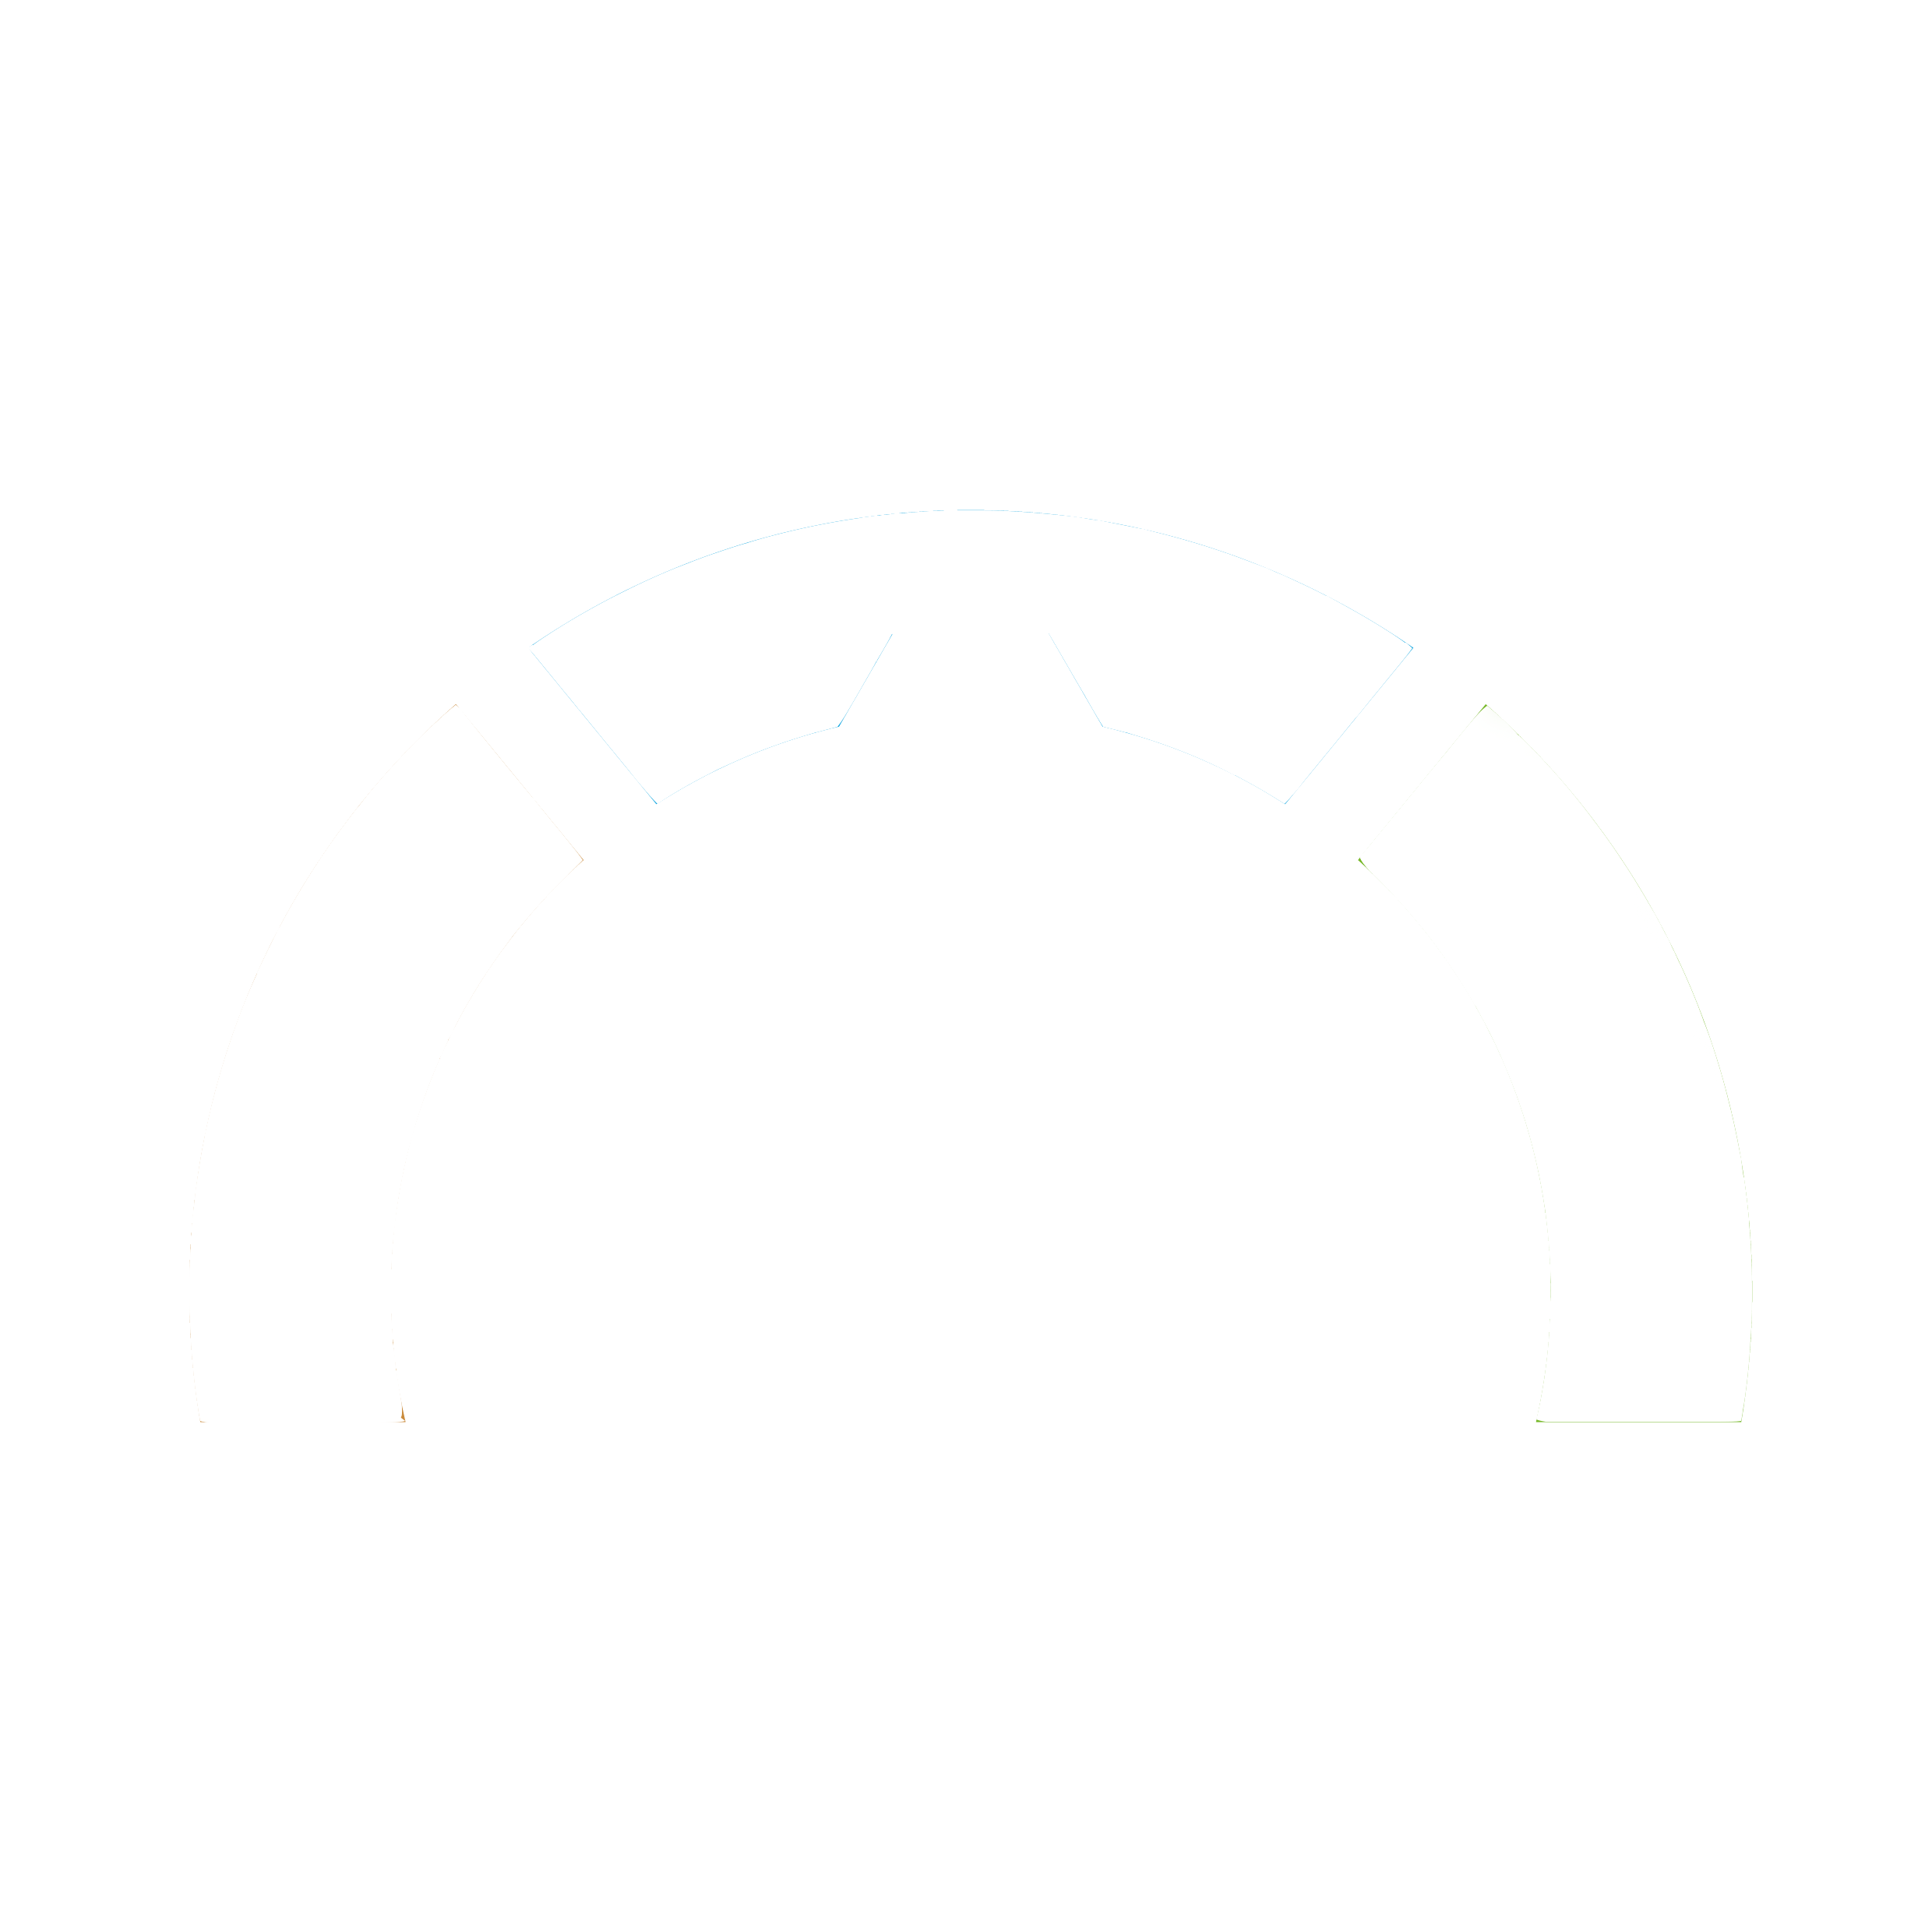 Capofix – Der ökologische Baustein für Ihren Garten